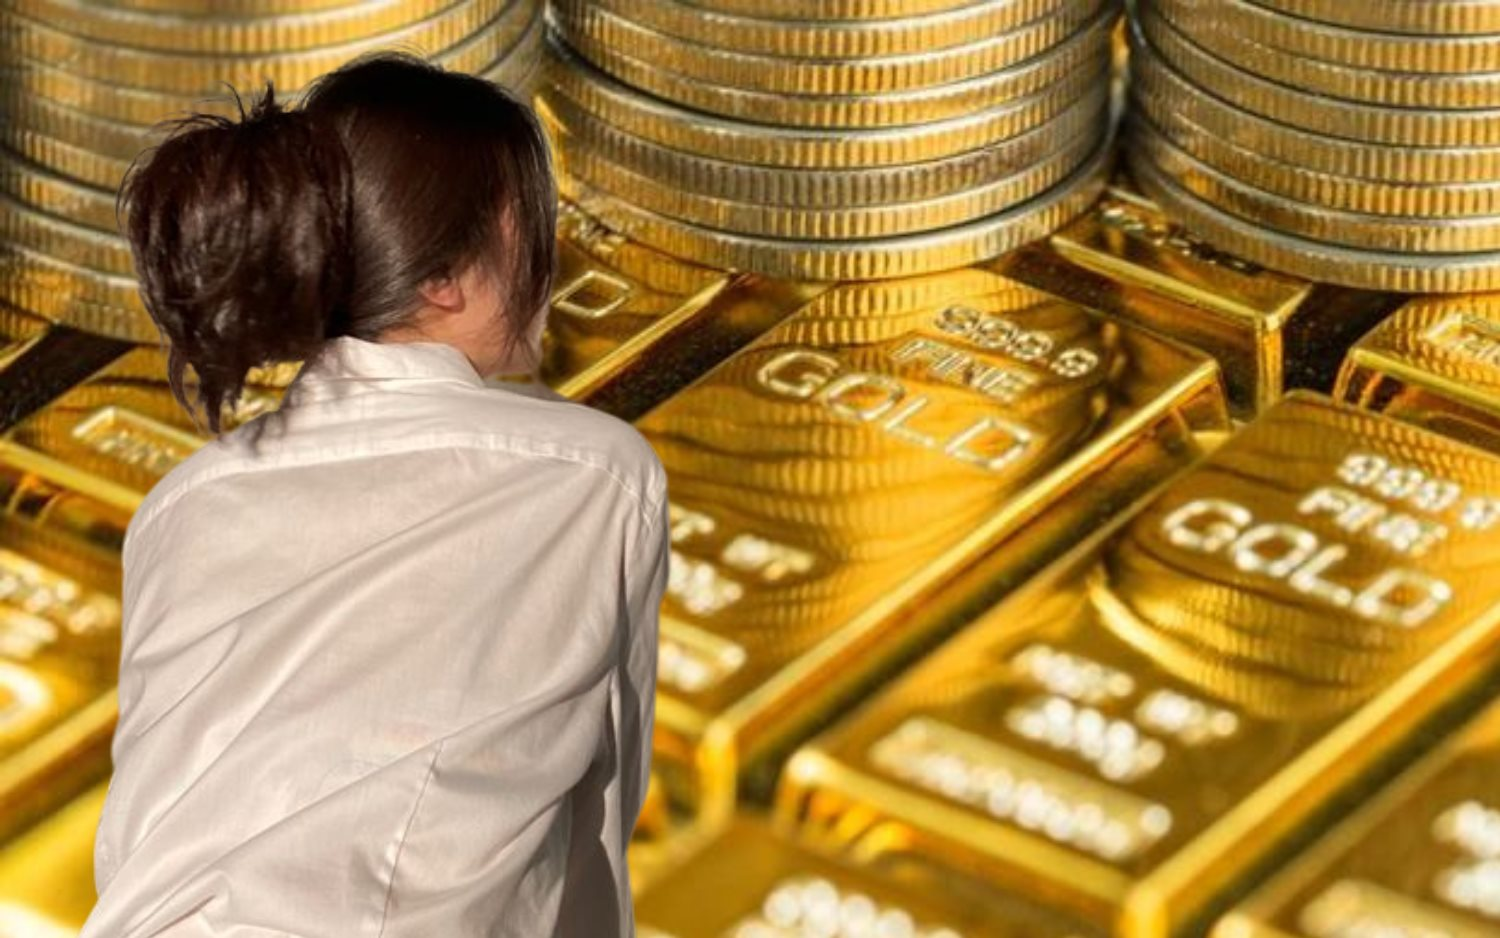 Vay 10 cây vàng và đóng lãi 2 triệu/tháng, 14 năm sau bị đòi trả lại đúng 10 cây vàng: Có nên "mặt dày" xin trả lại bằng tiền mặt?